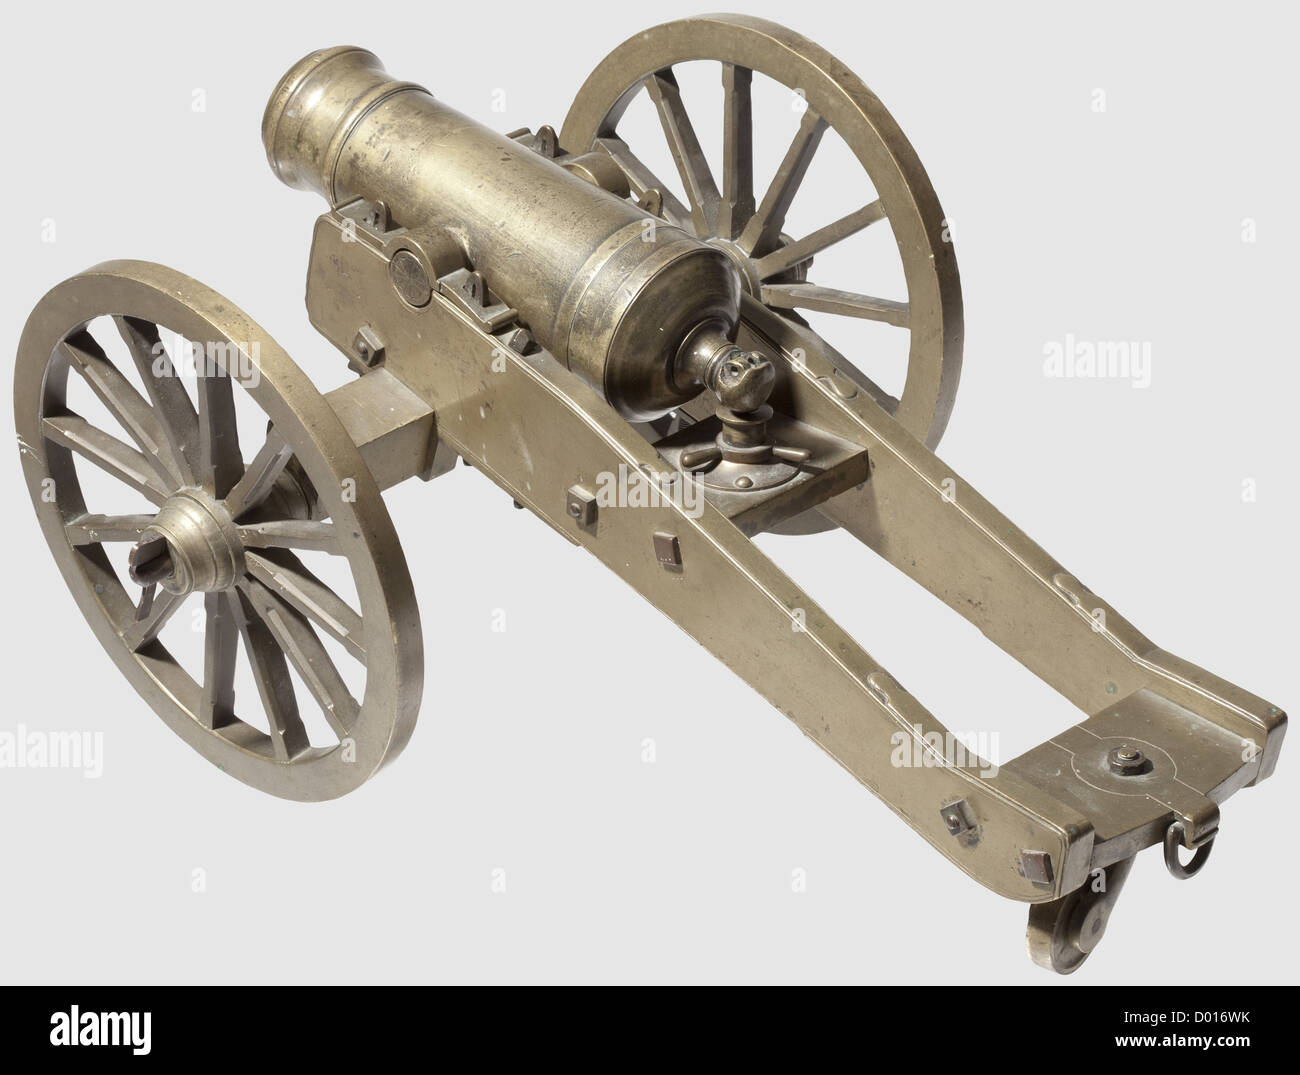 Un modèle de canon de terrain, style vers 1800. Corps en laiton robuste  segmenté par des gaines, avec alésage lisse de calibre 25 mm avec  tourillons sur les côtés, trou de contact